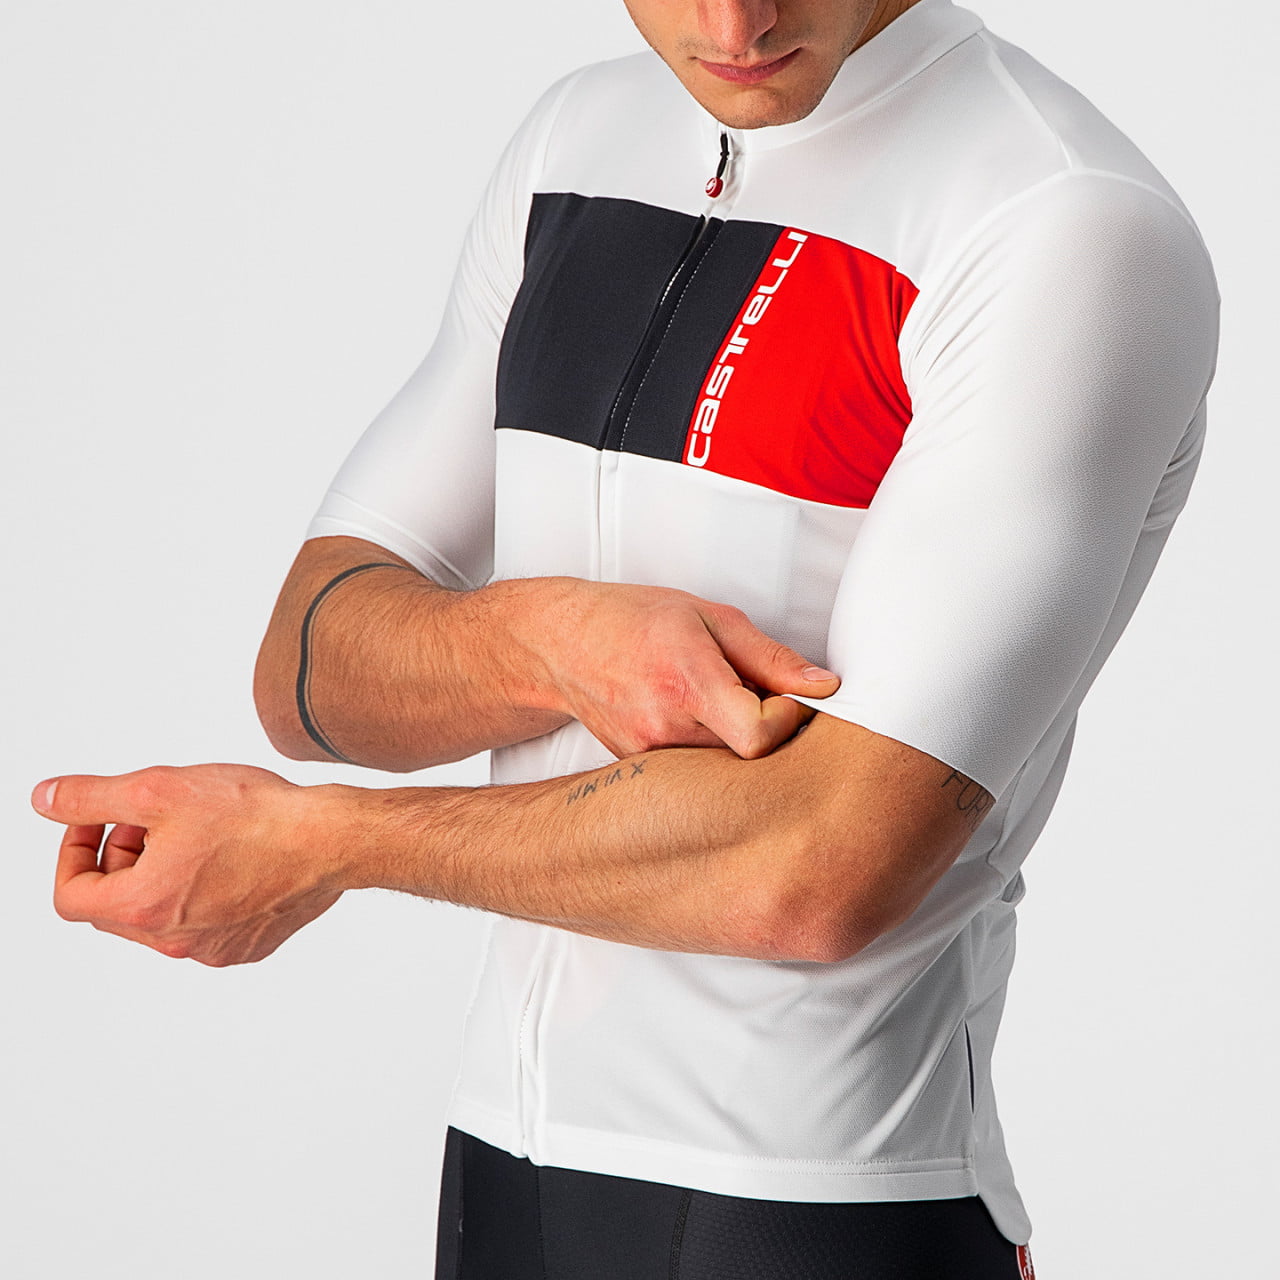 Prologo 7 short-sleeved jersey